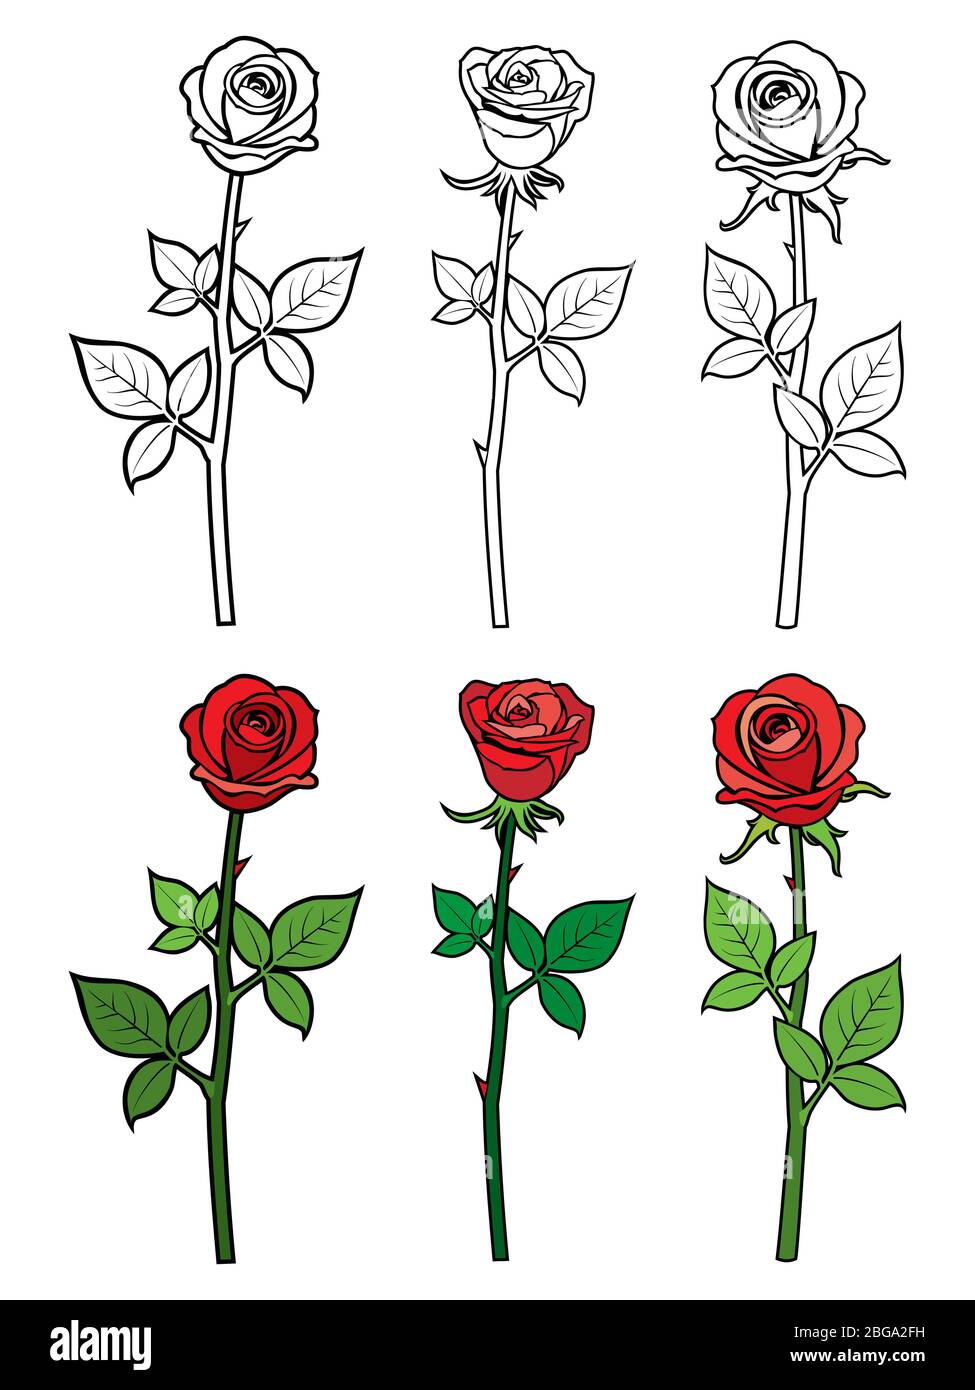 Roses rouges et ouline dessinées à la main - page de coloriage des fleurs. Illustration vectorielle Illustration de Vecteur